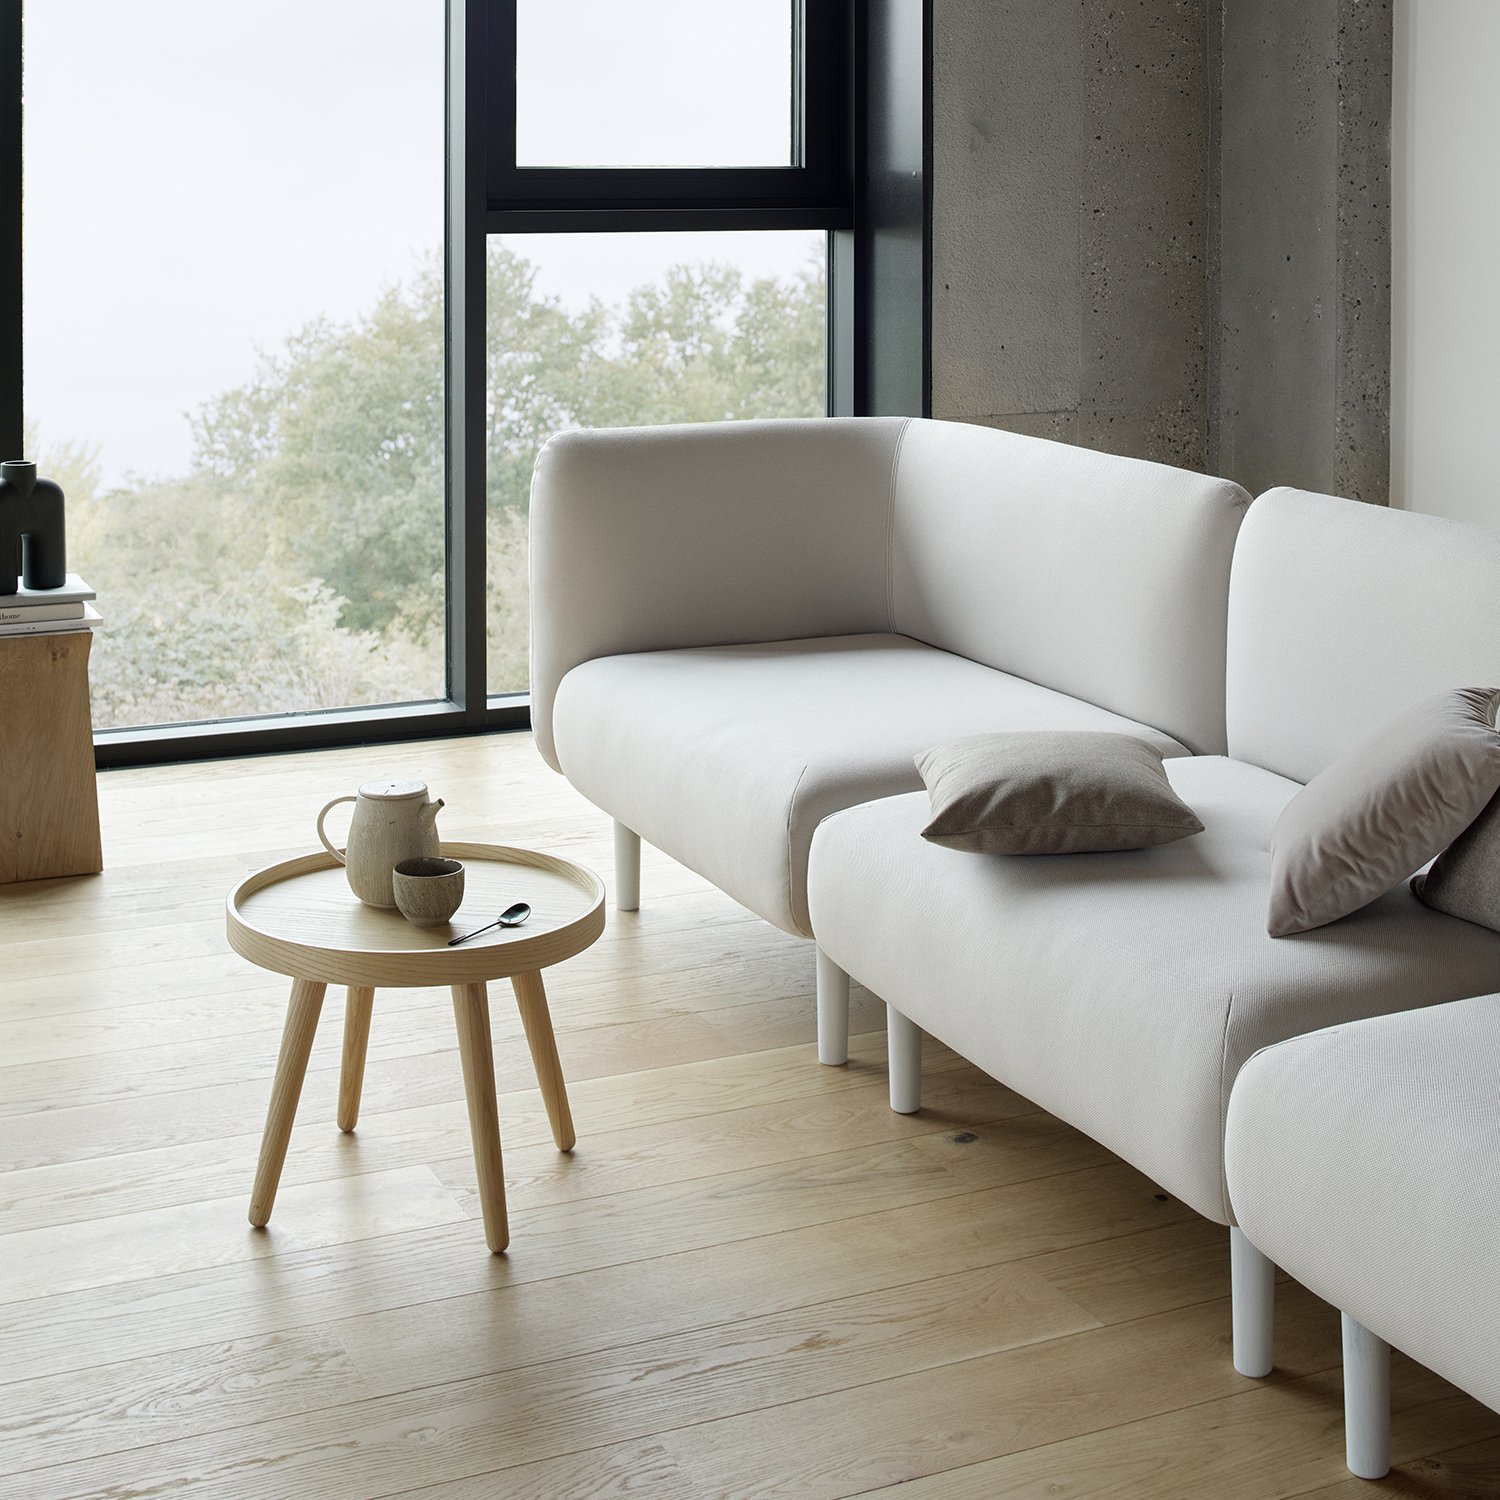 Elle Sofa modular from Softline, designed by Charlotte Honcke